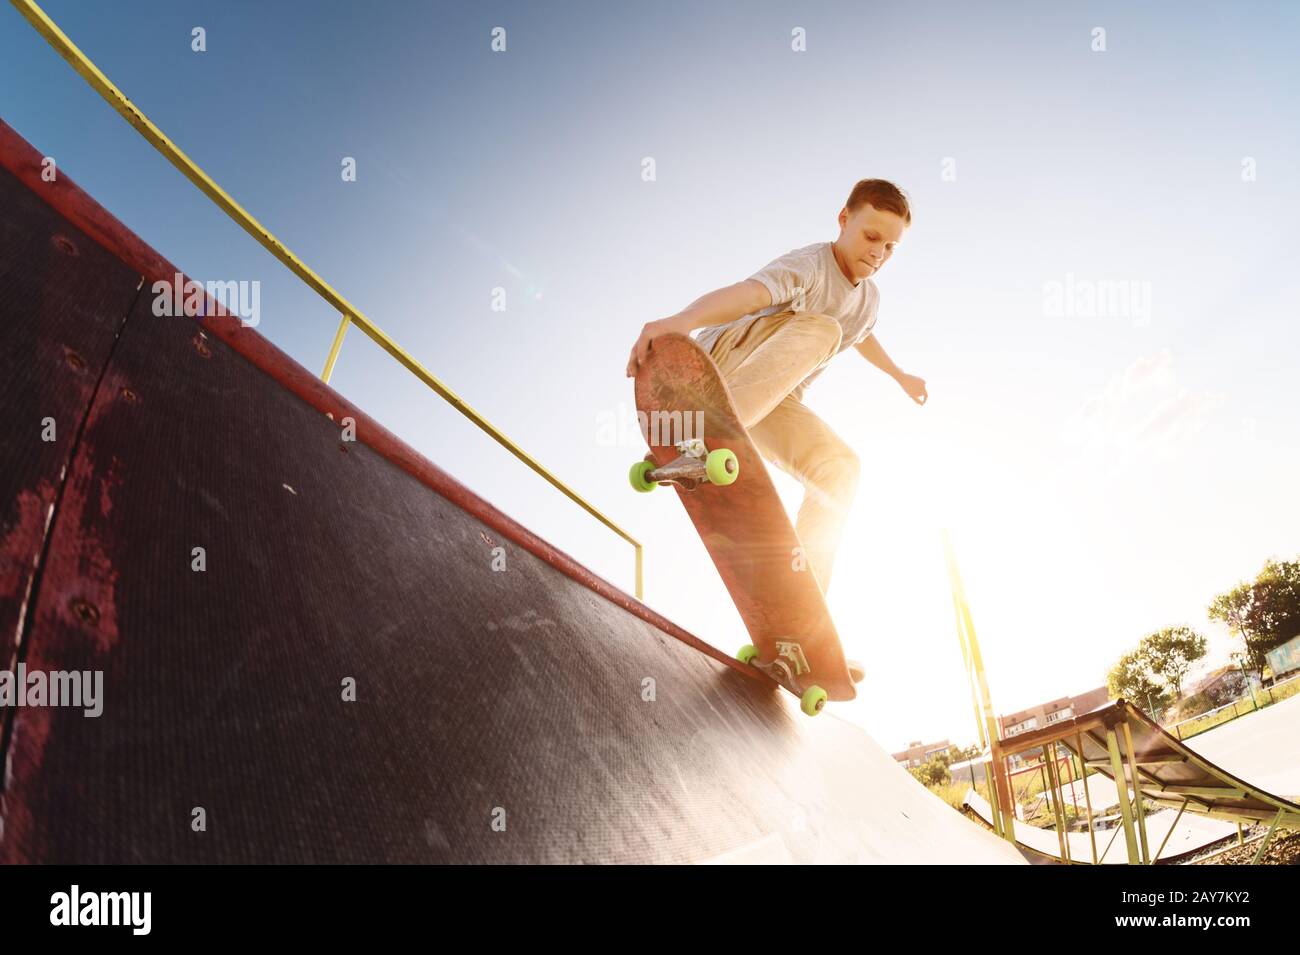 Un patinador adolescente cuelga sobre una rampa en una tabla de skate en un parque de skate Foto de stock